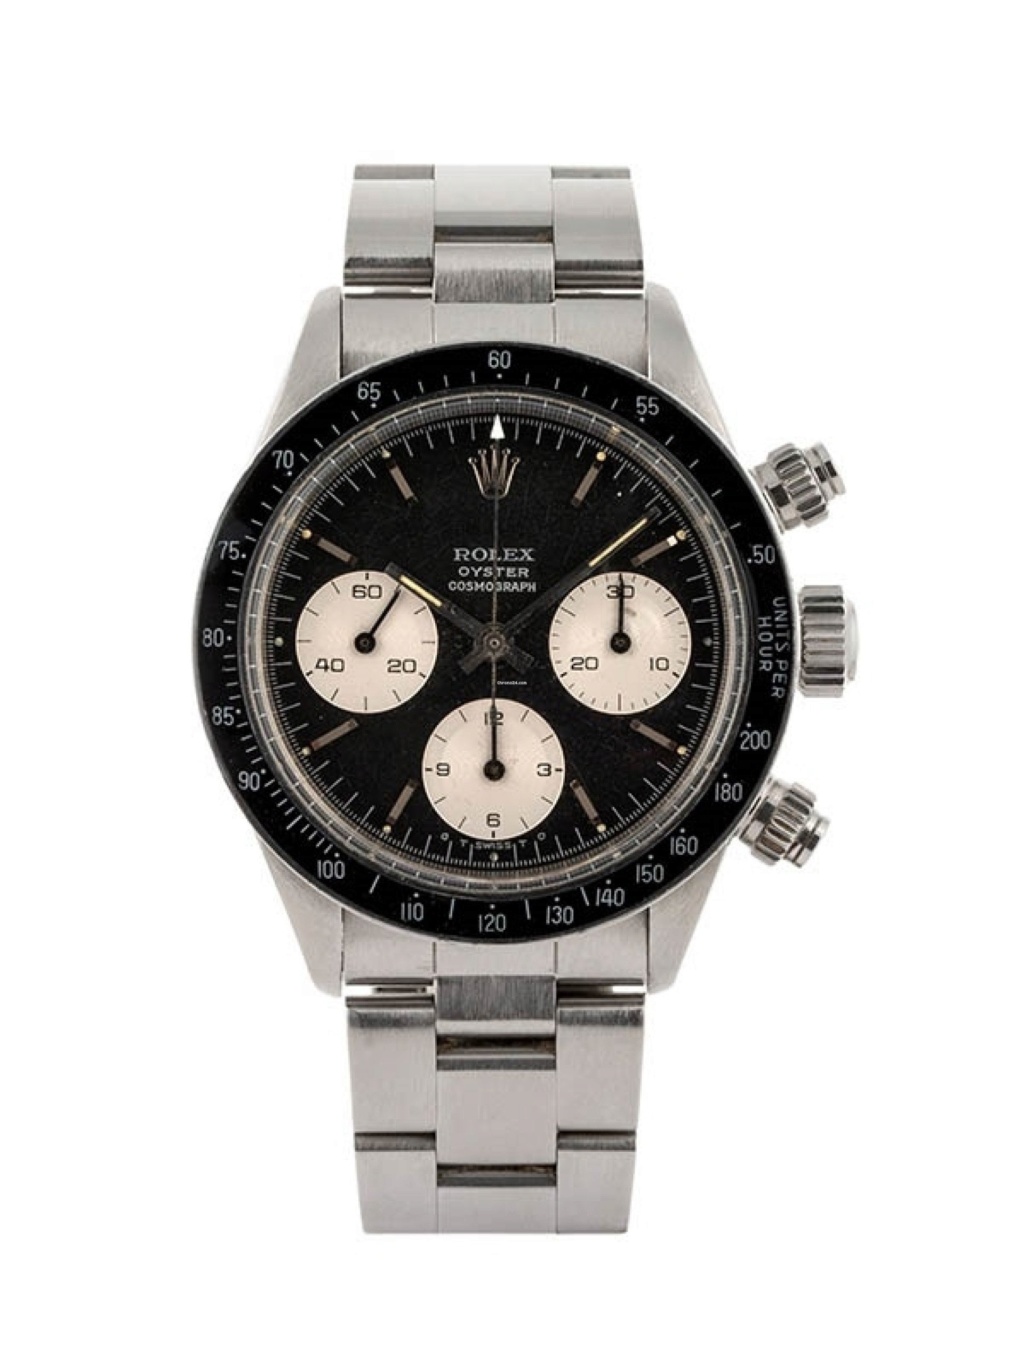 Les chronographes concurrents de l'époque du Rolex Daytona 6265 cadran noir, compteurs blancs. 14002710